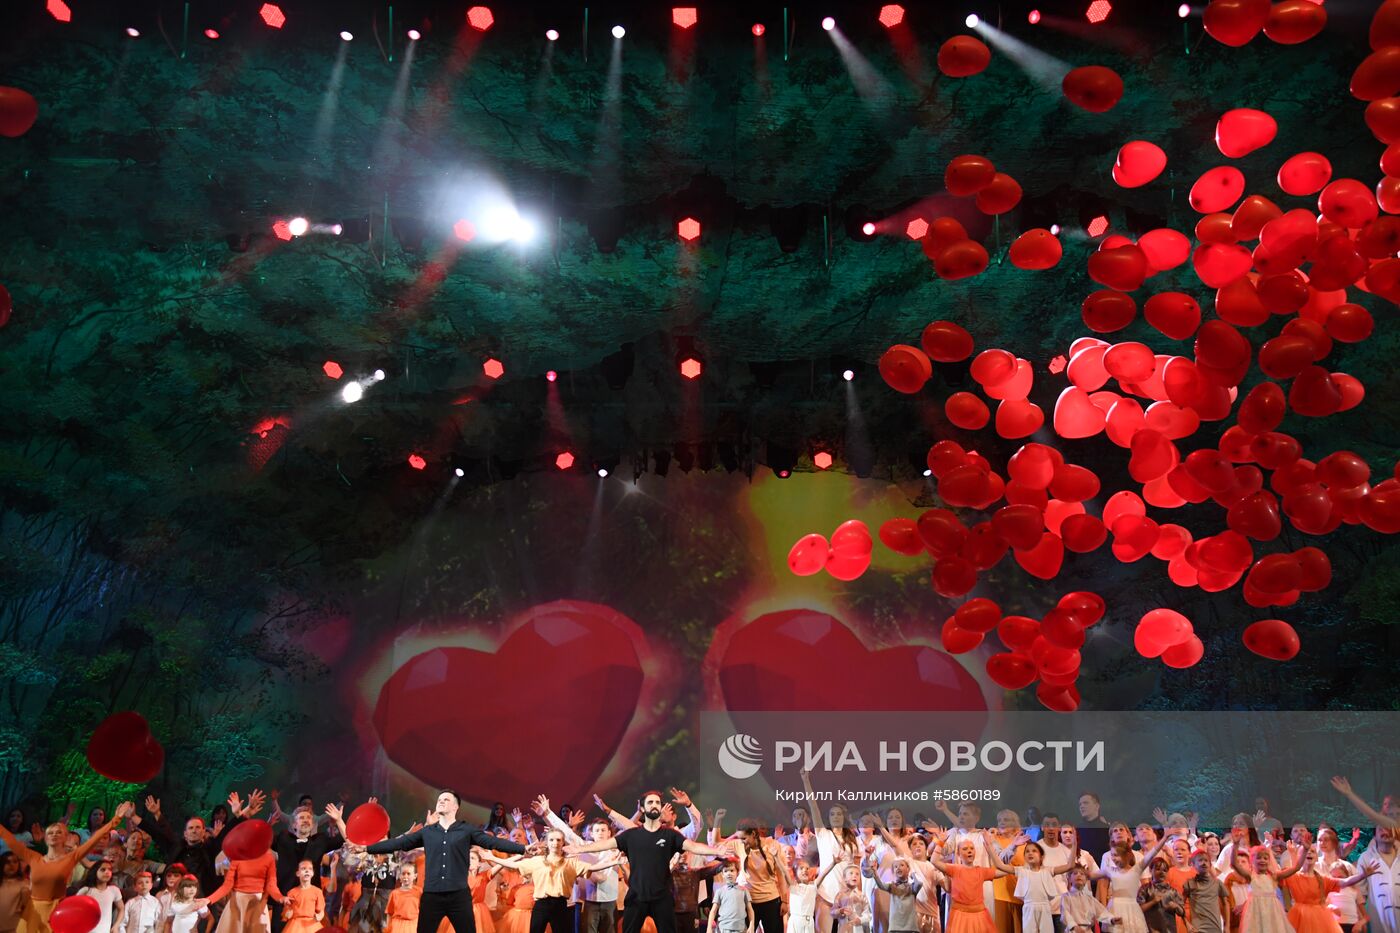 Спектакль "Мы все из одной глины" в Кремле